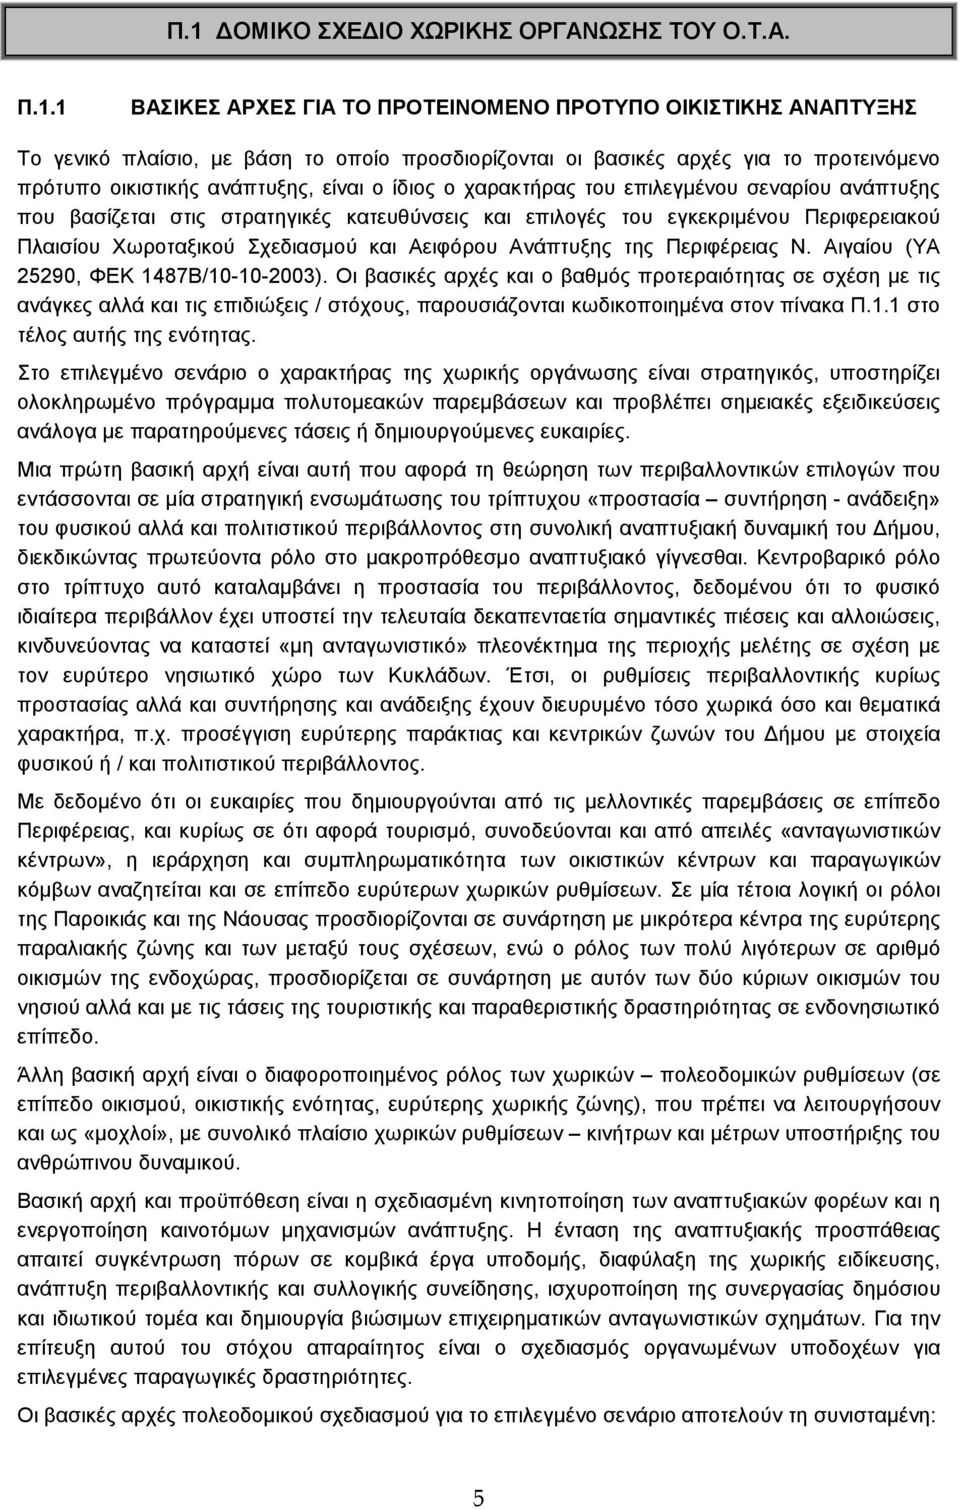 Πλαισίου Χωροταξικού Σχεδιασµού και Αειφόρου Ανάπτυξης της Περιφέρειας Ν. Αιγαίου (ΥΑ 25290, ΦΕΚ 1487Β/10-10-2003).